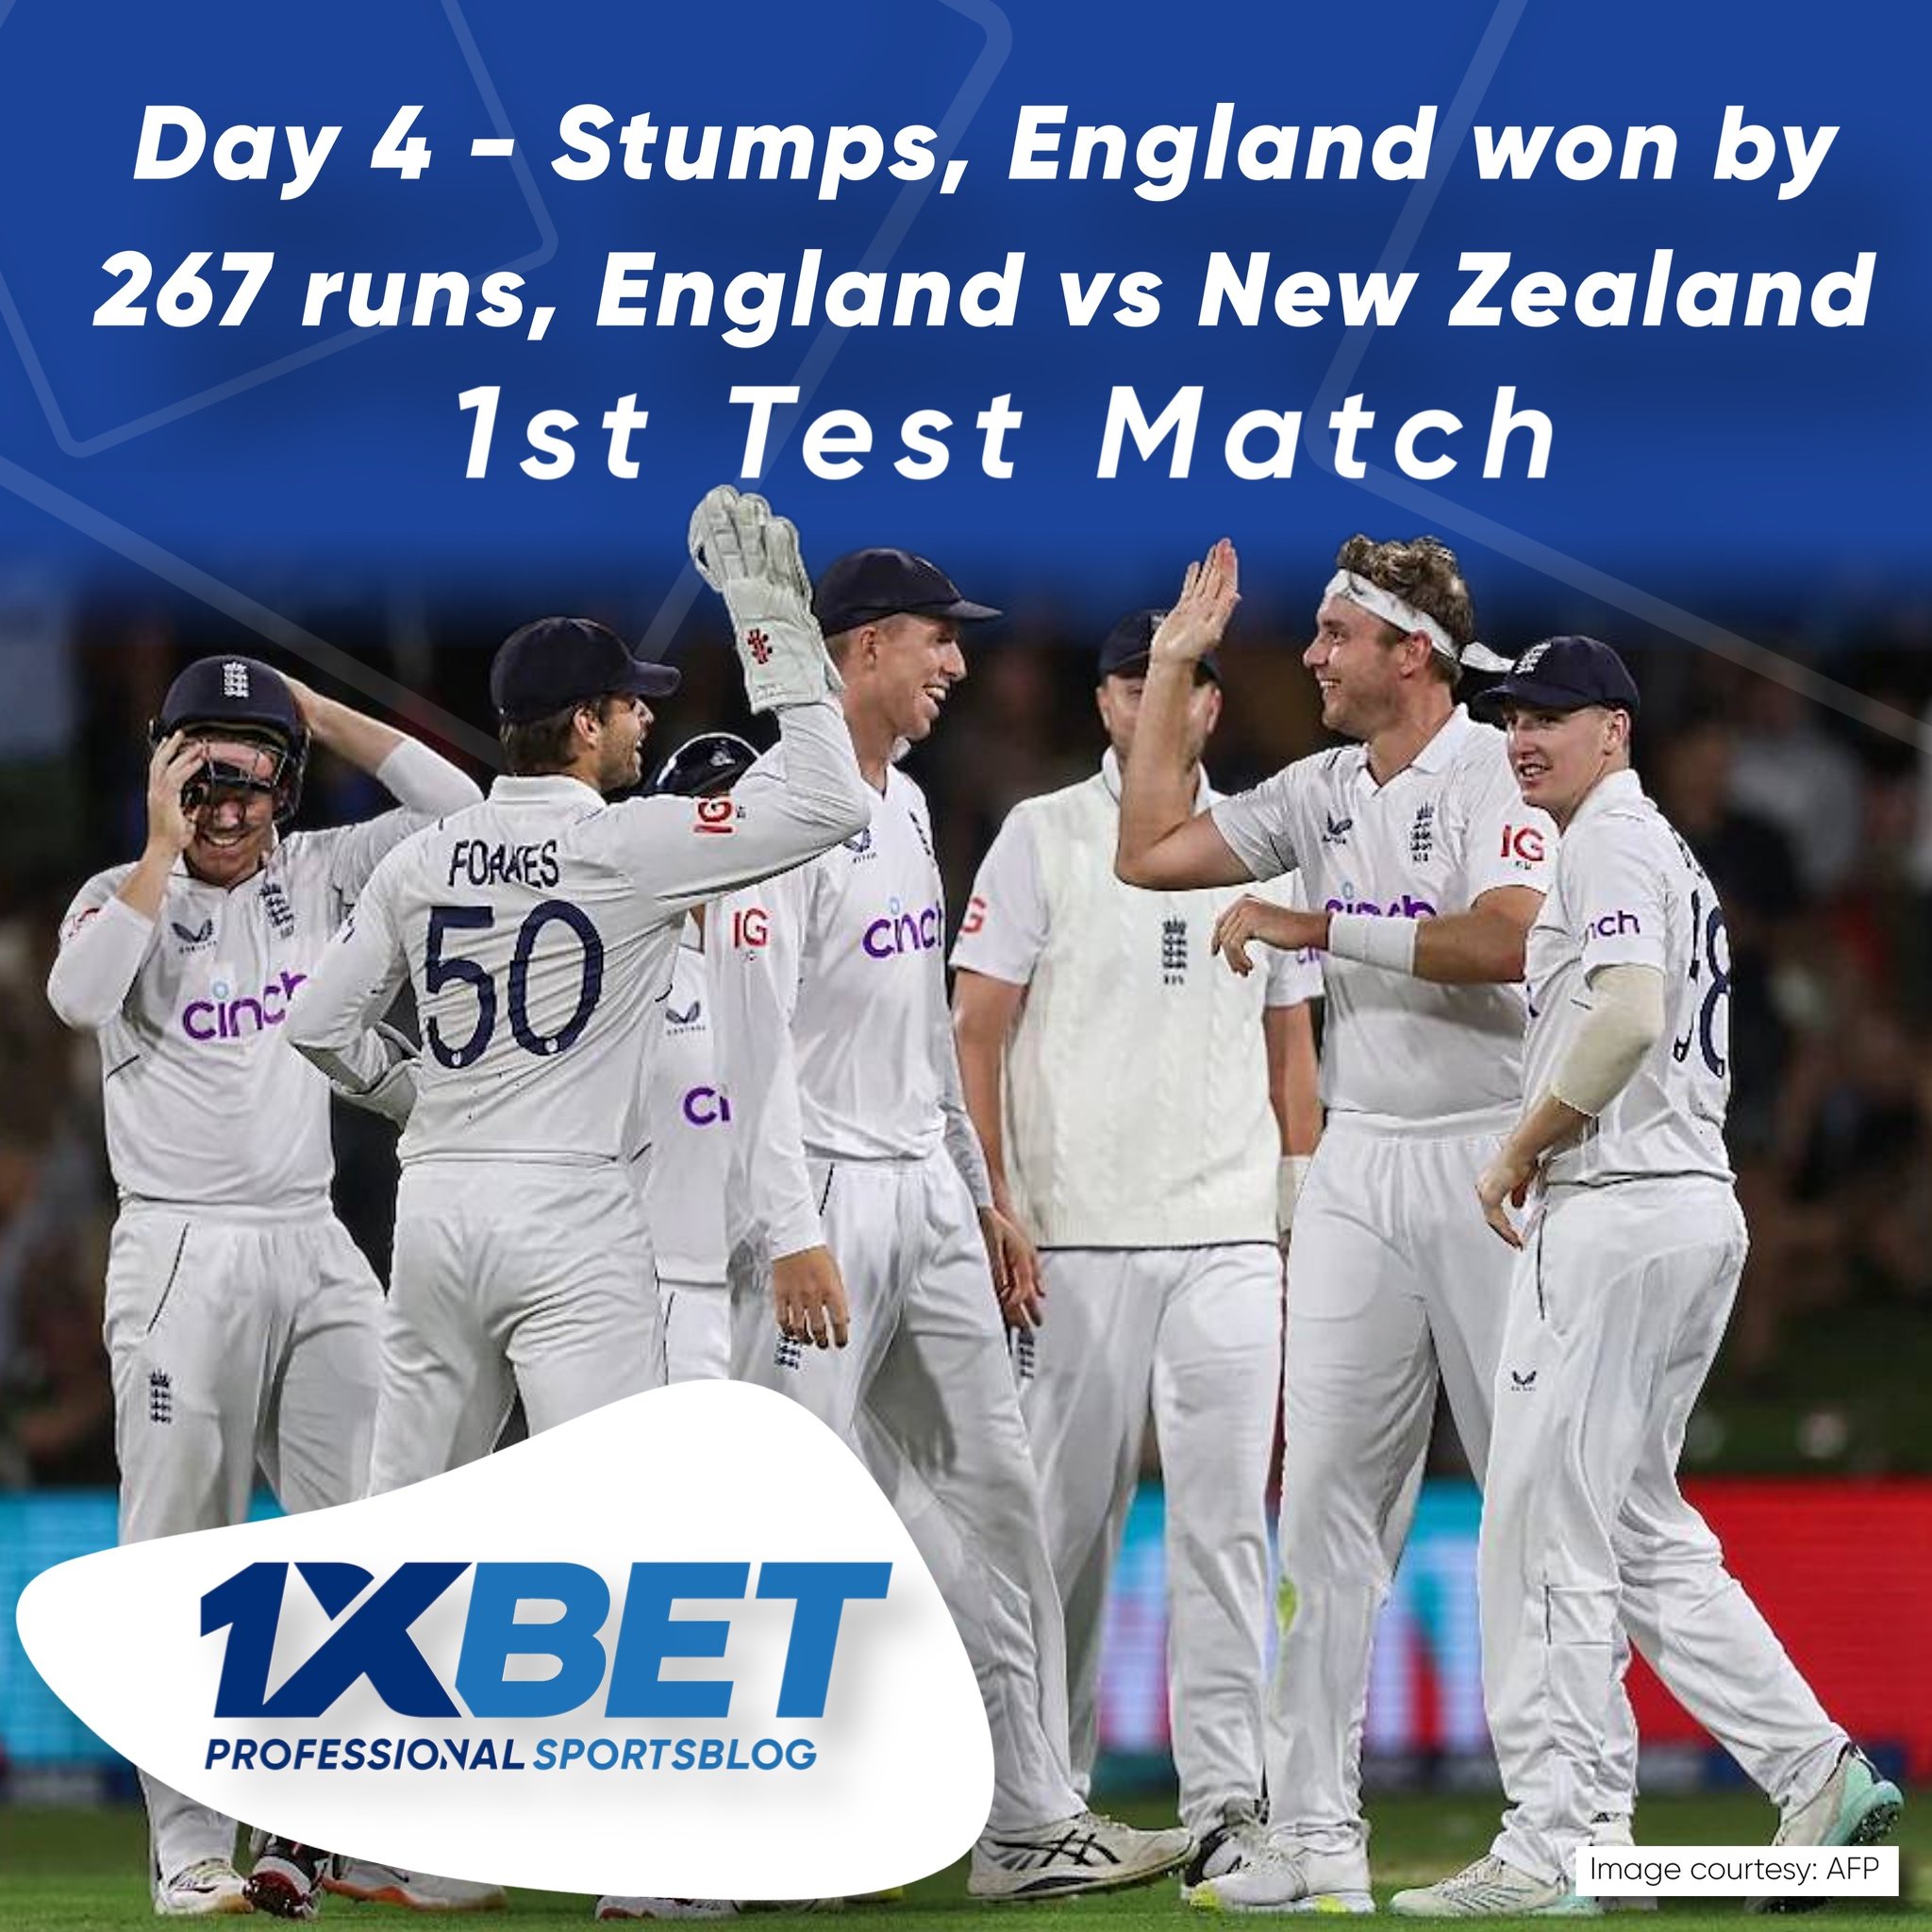 Day 4 - Stumps, England won by 267 runs